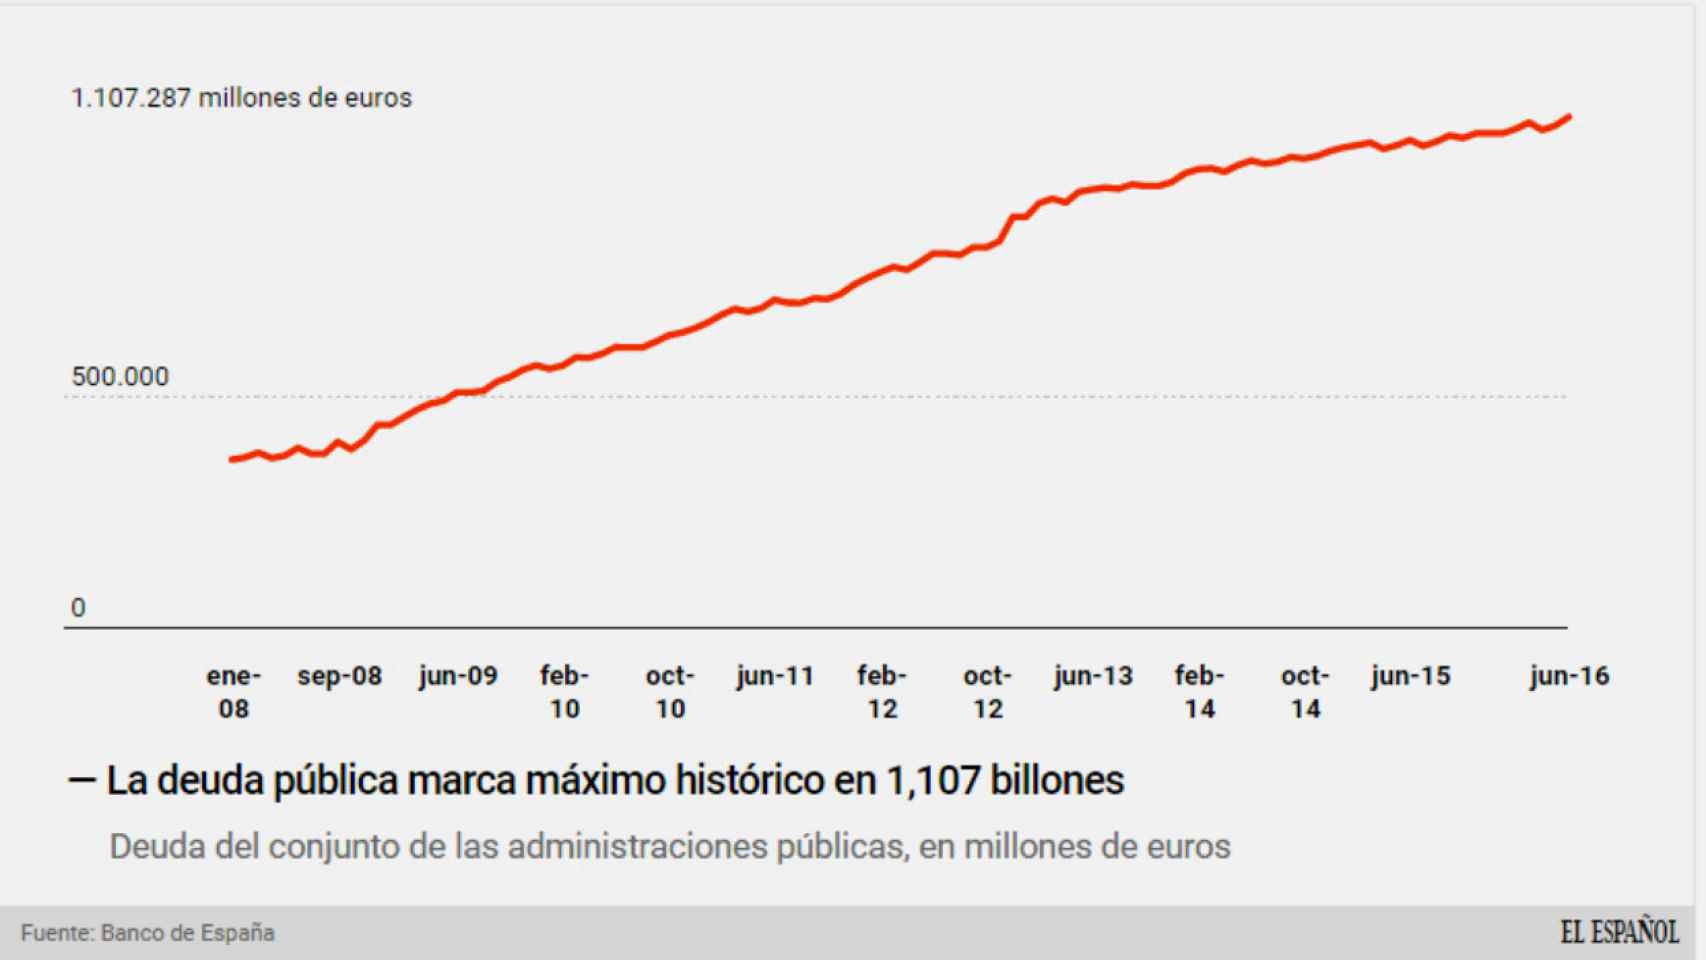 La deuda pública supera los 1,1 billones de euros por primera vez en la historia